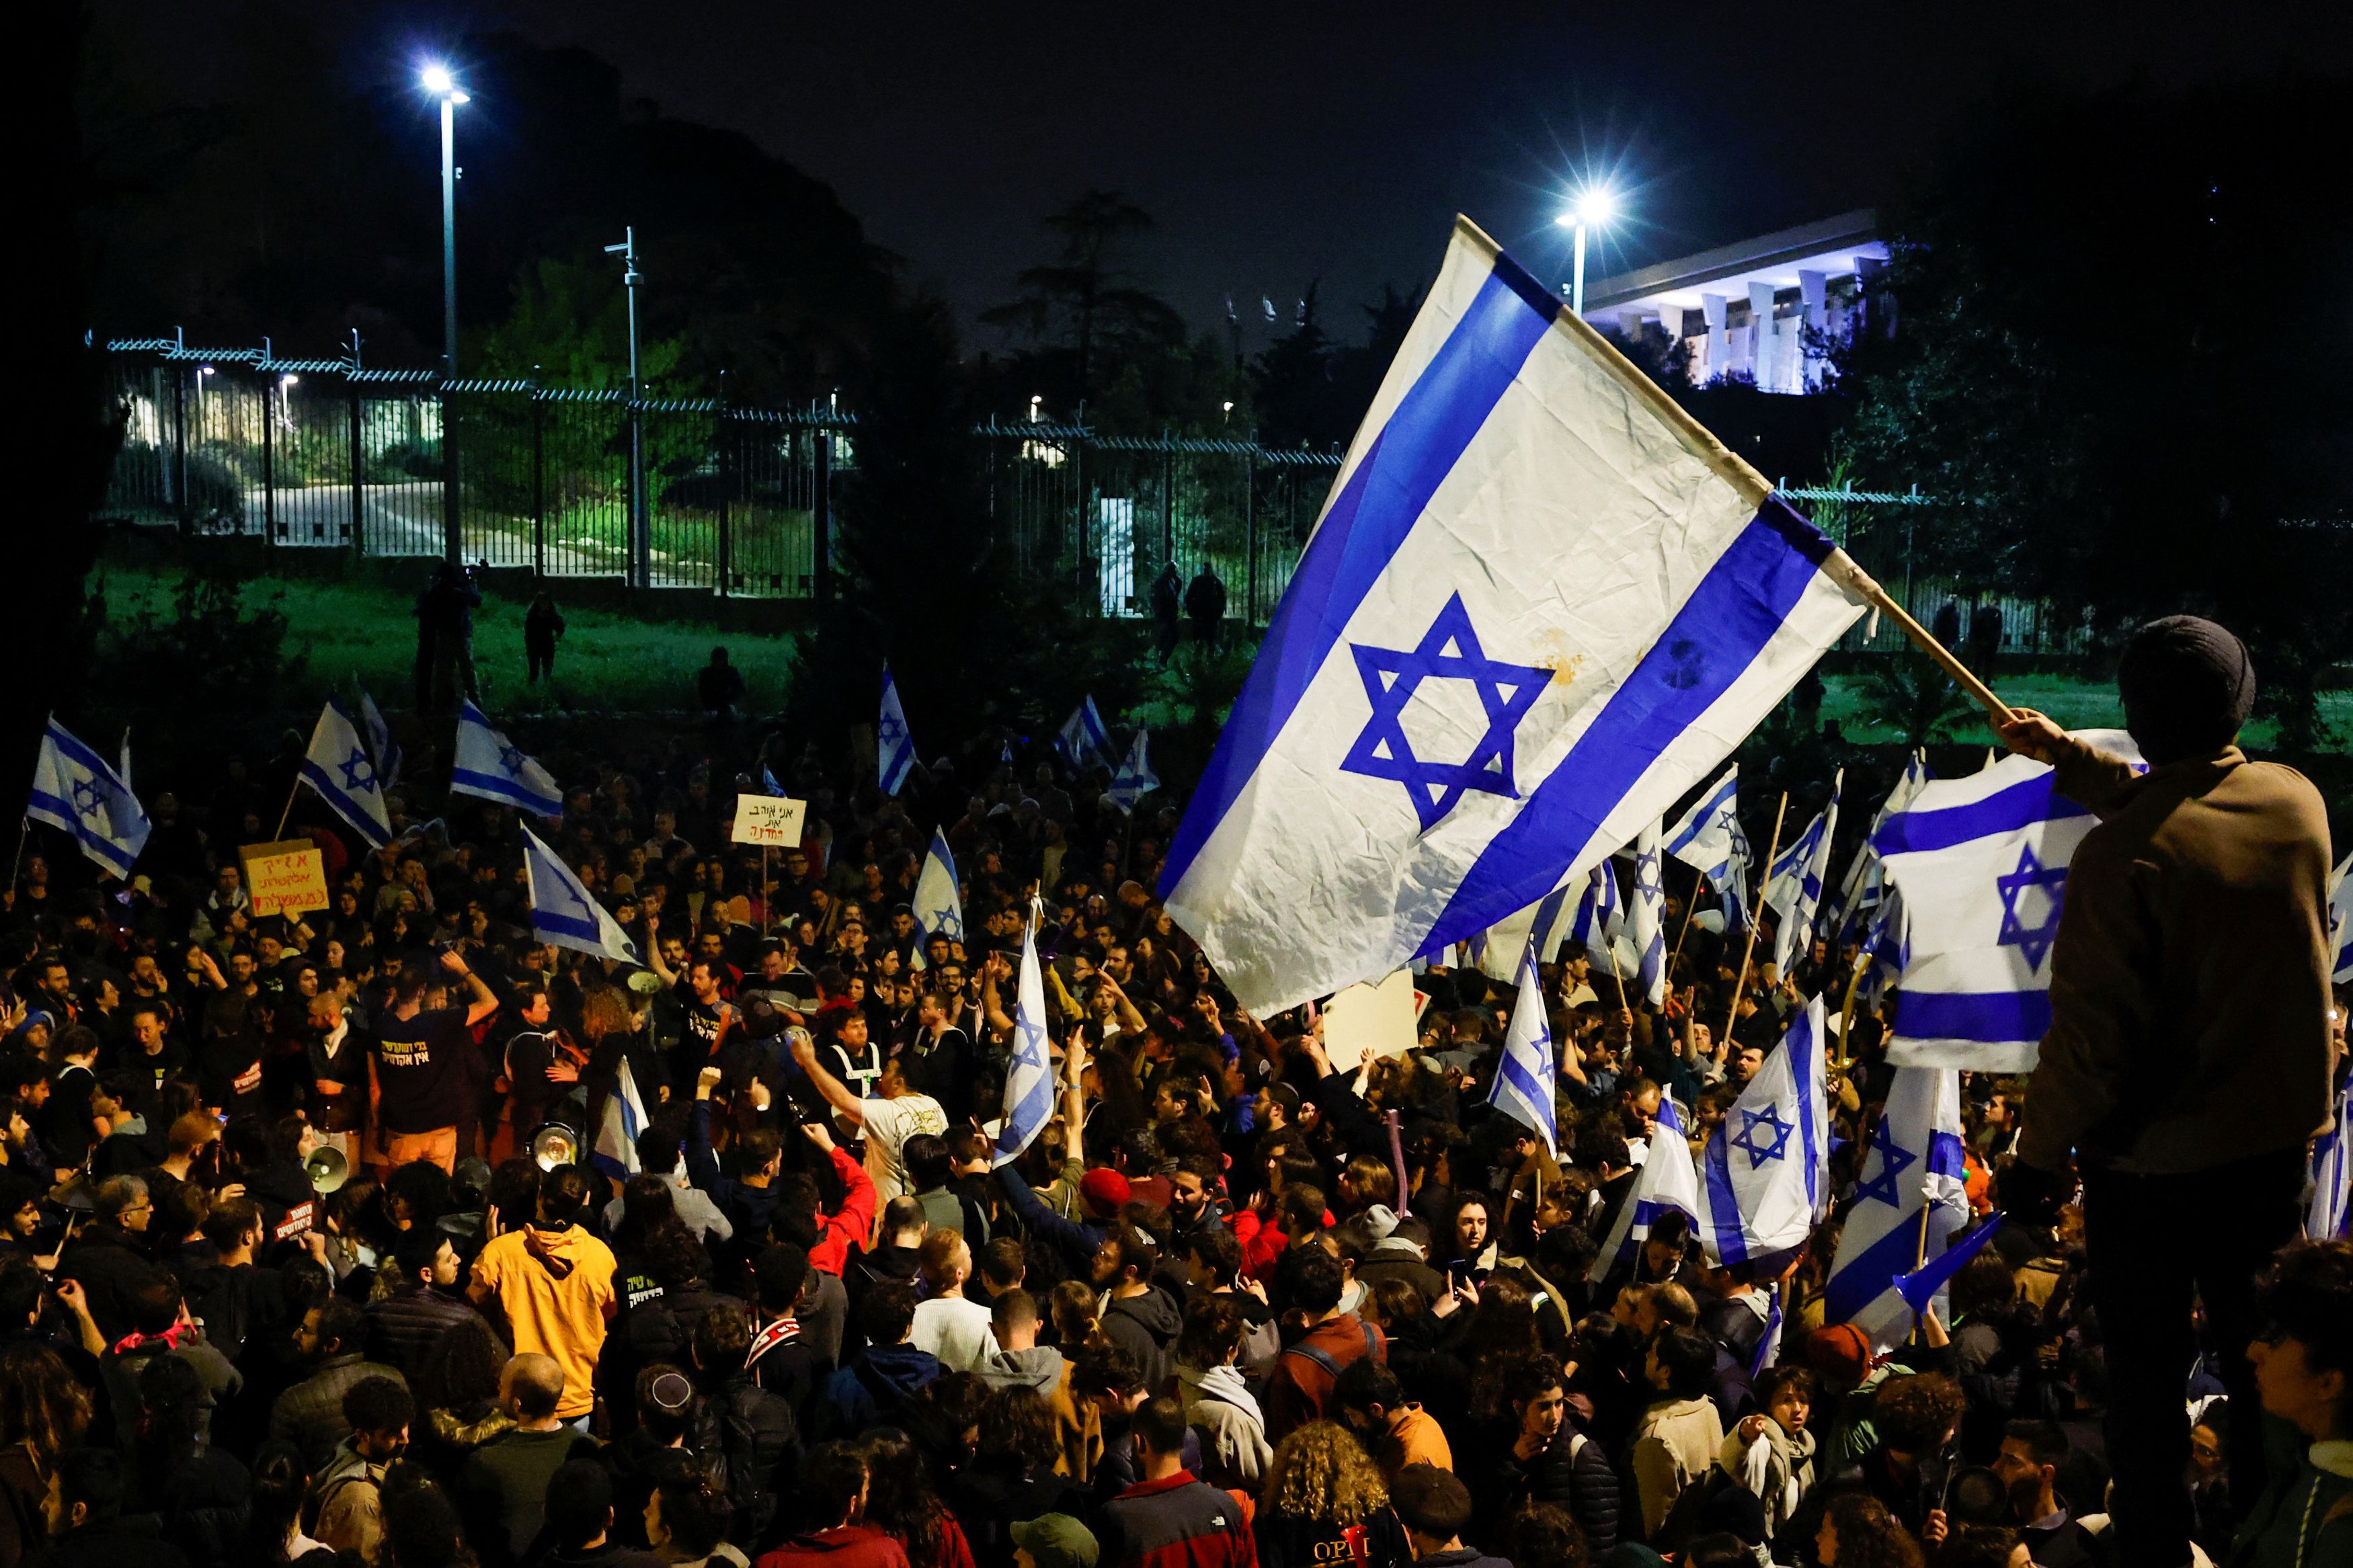 Ισραήλ: Αναβάλλεται η ανακοίνωση Νετανιάχου για αναστολή της μεταρρύθμισης